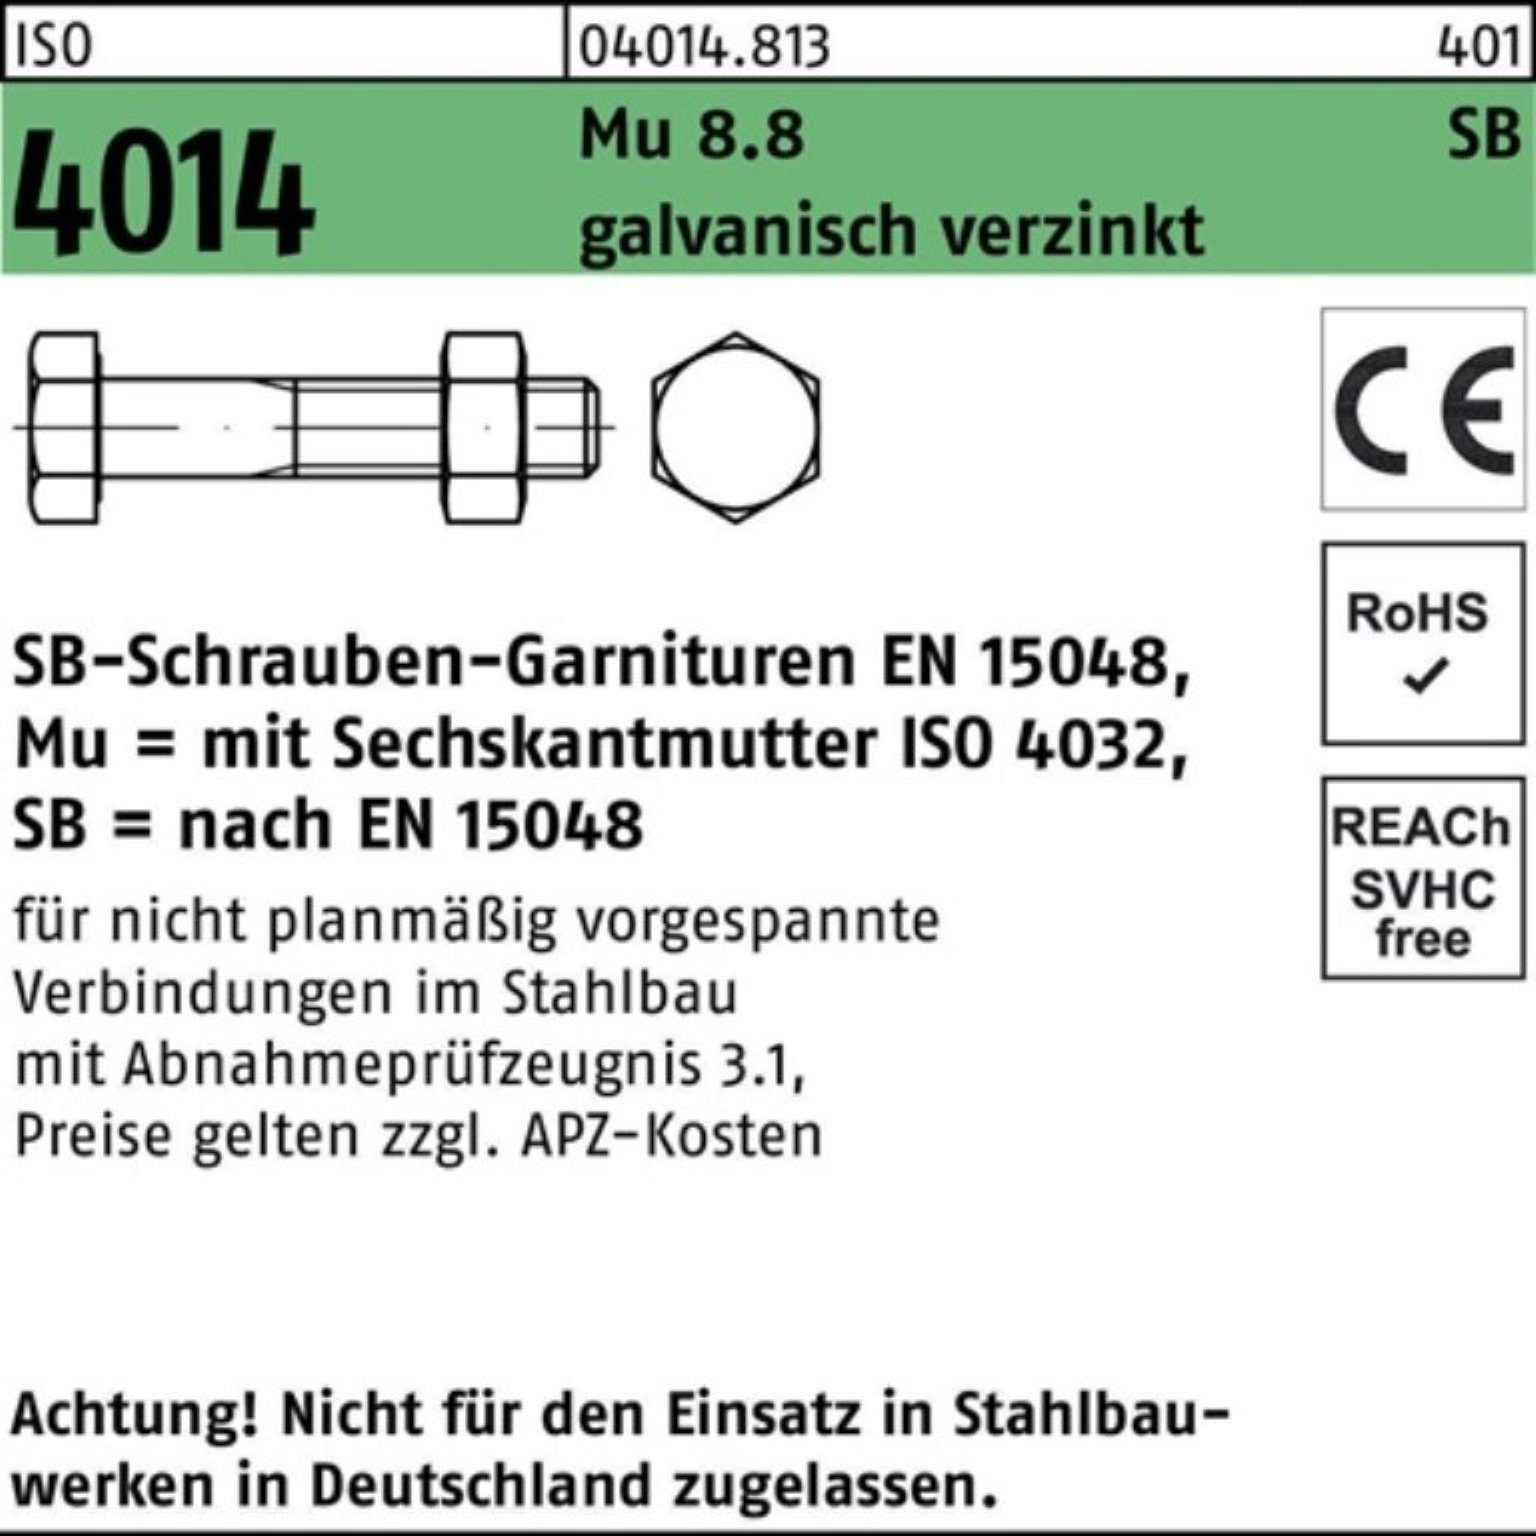 Schaft/Mutter Bufab 4014 Sechskantschraube 100er ISO gal Mu 8.8 Sechskantschraube Pack M27x100